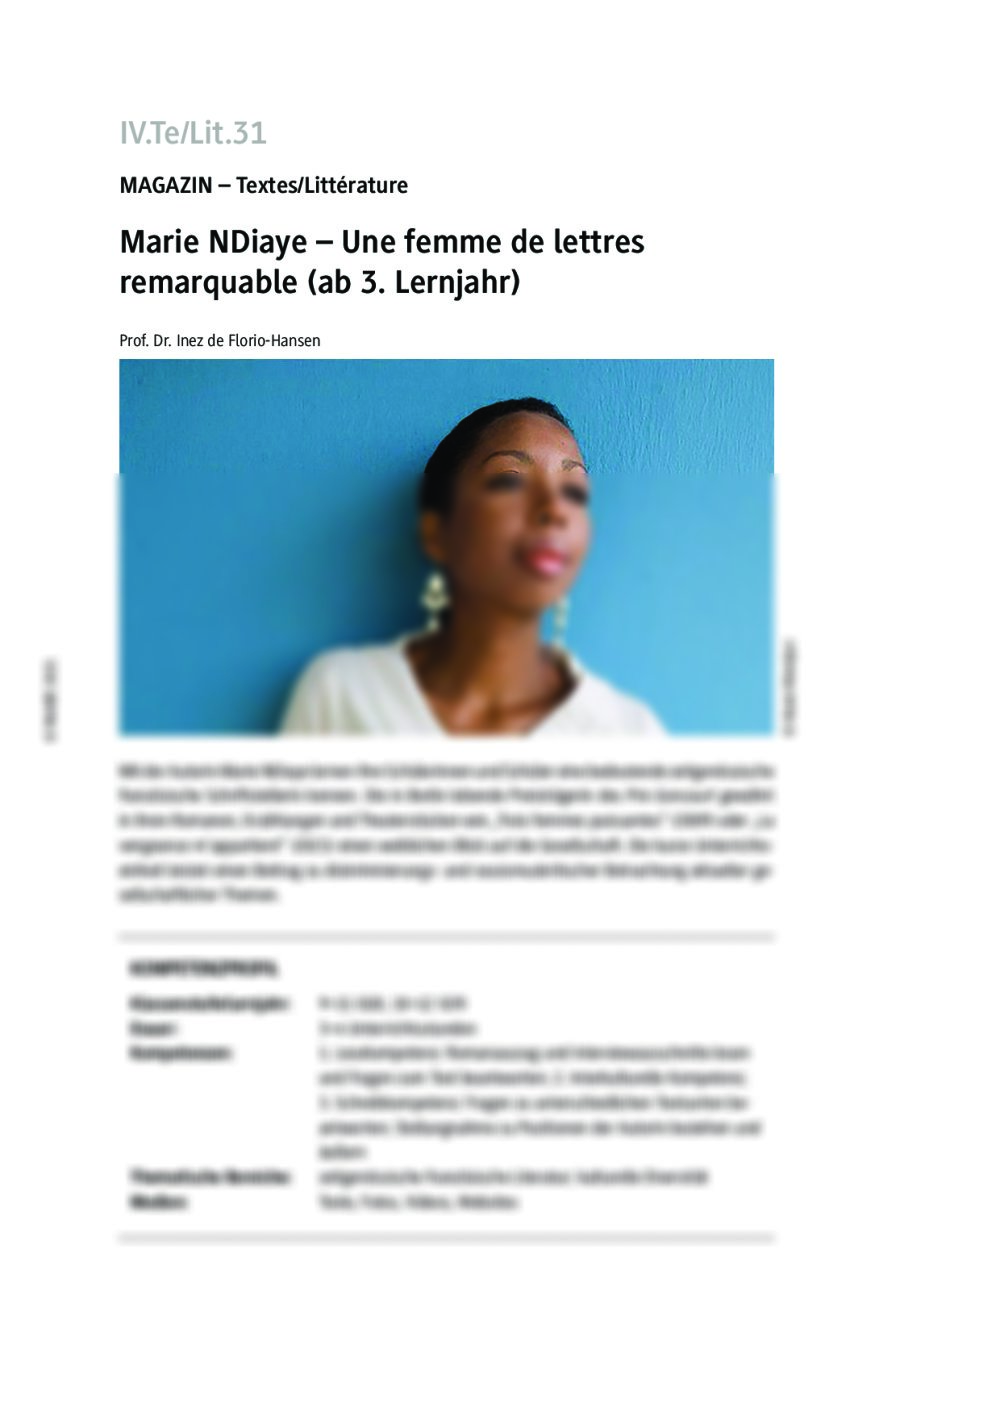 Marie NDiaye - Seite 1